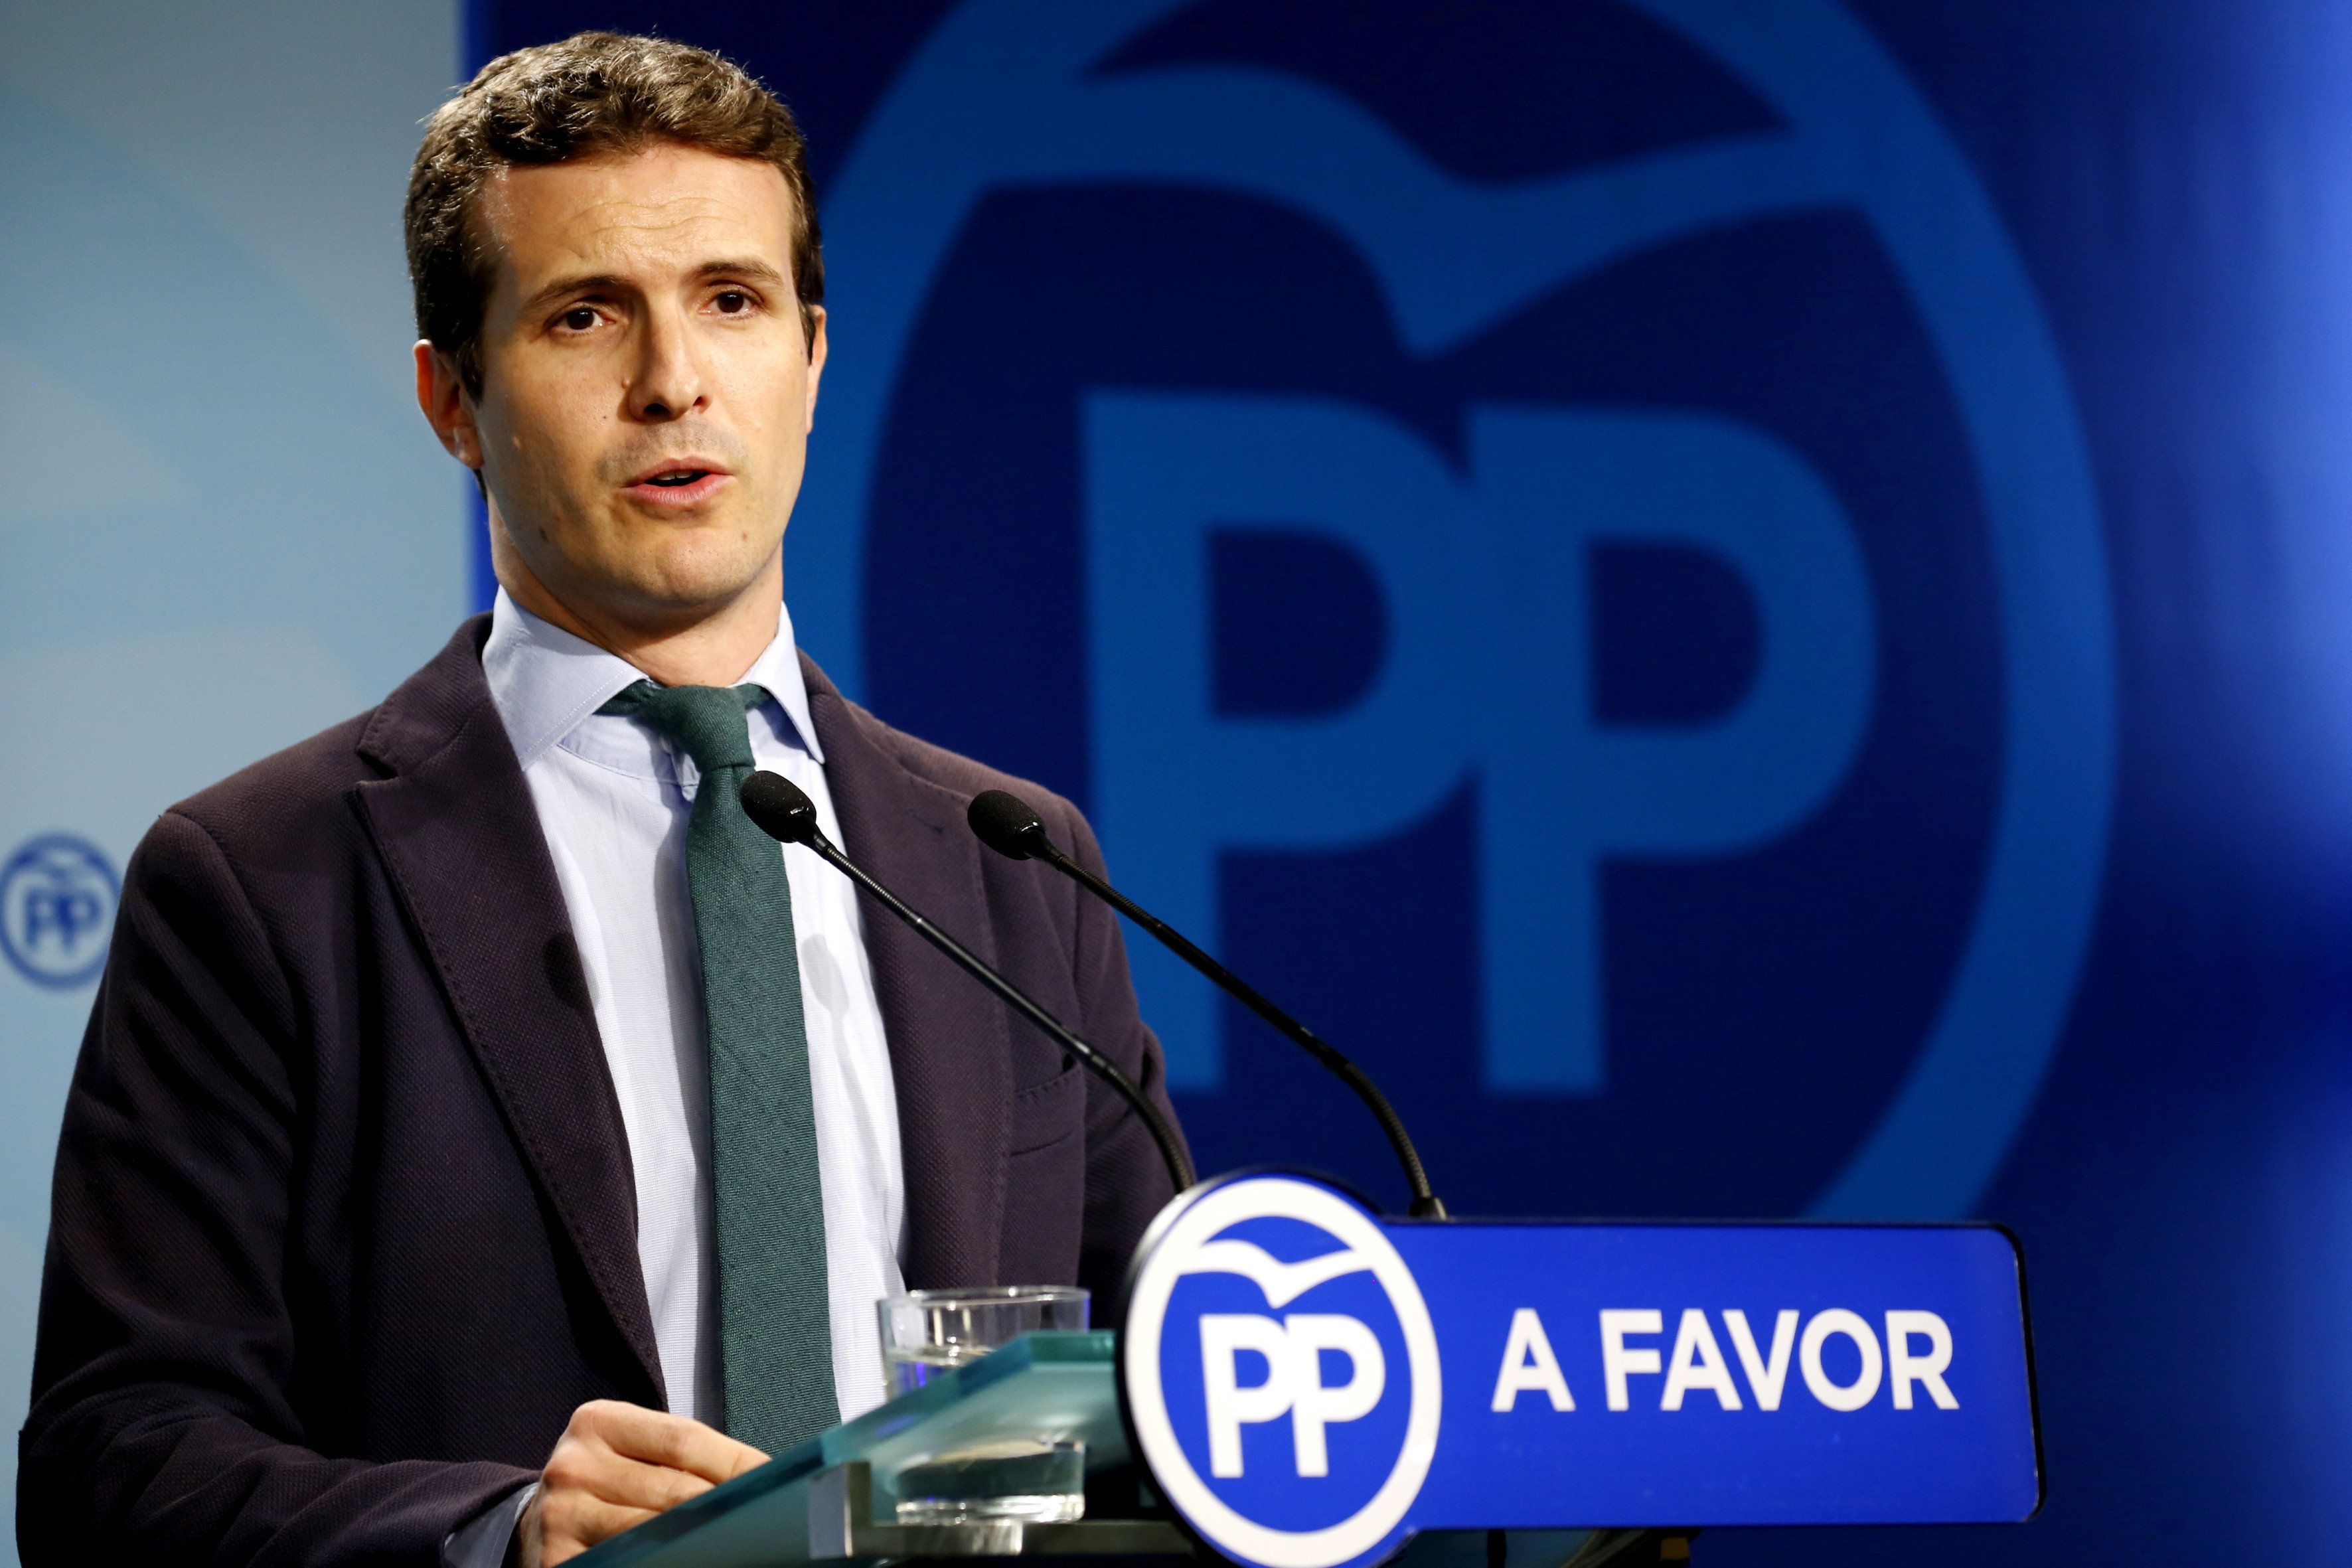 El PP diu "no, no i no" a l'oferta de referèndum de Puigdemont